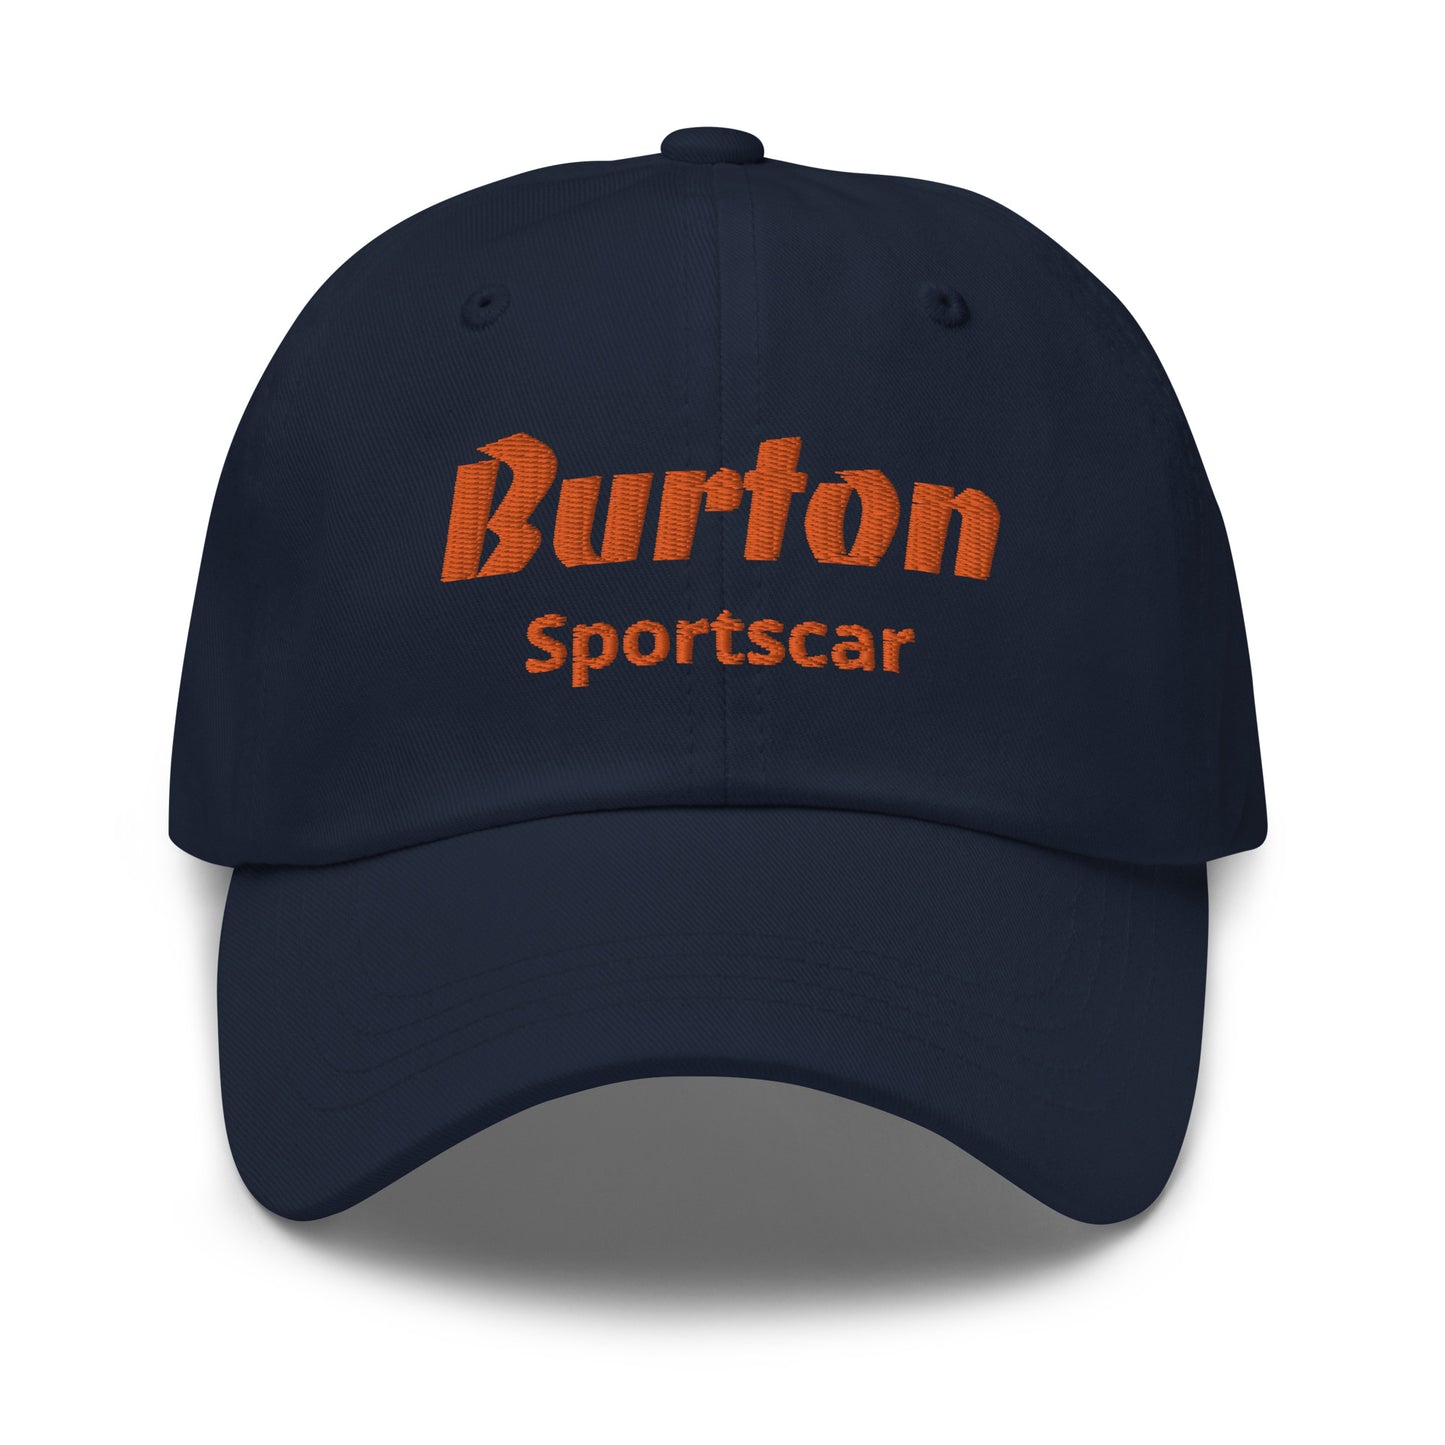 Geborduurde Burton sportscar pet - Zwart, Navy of Grijs